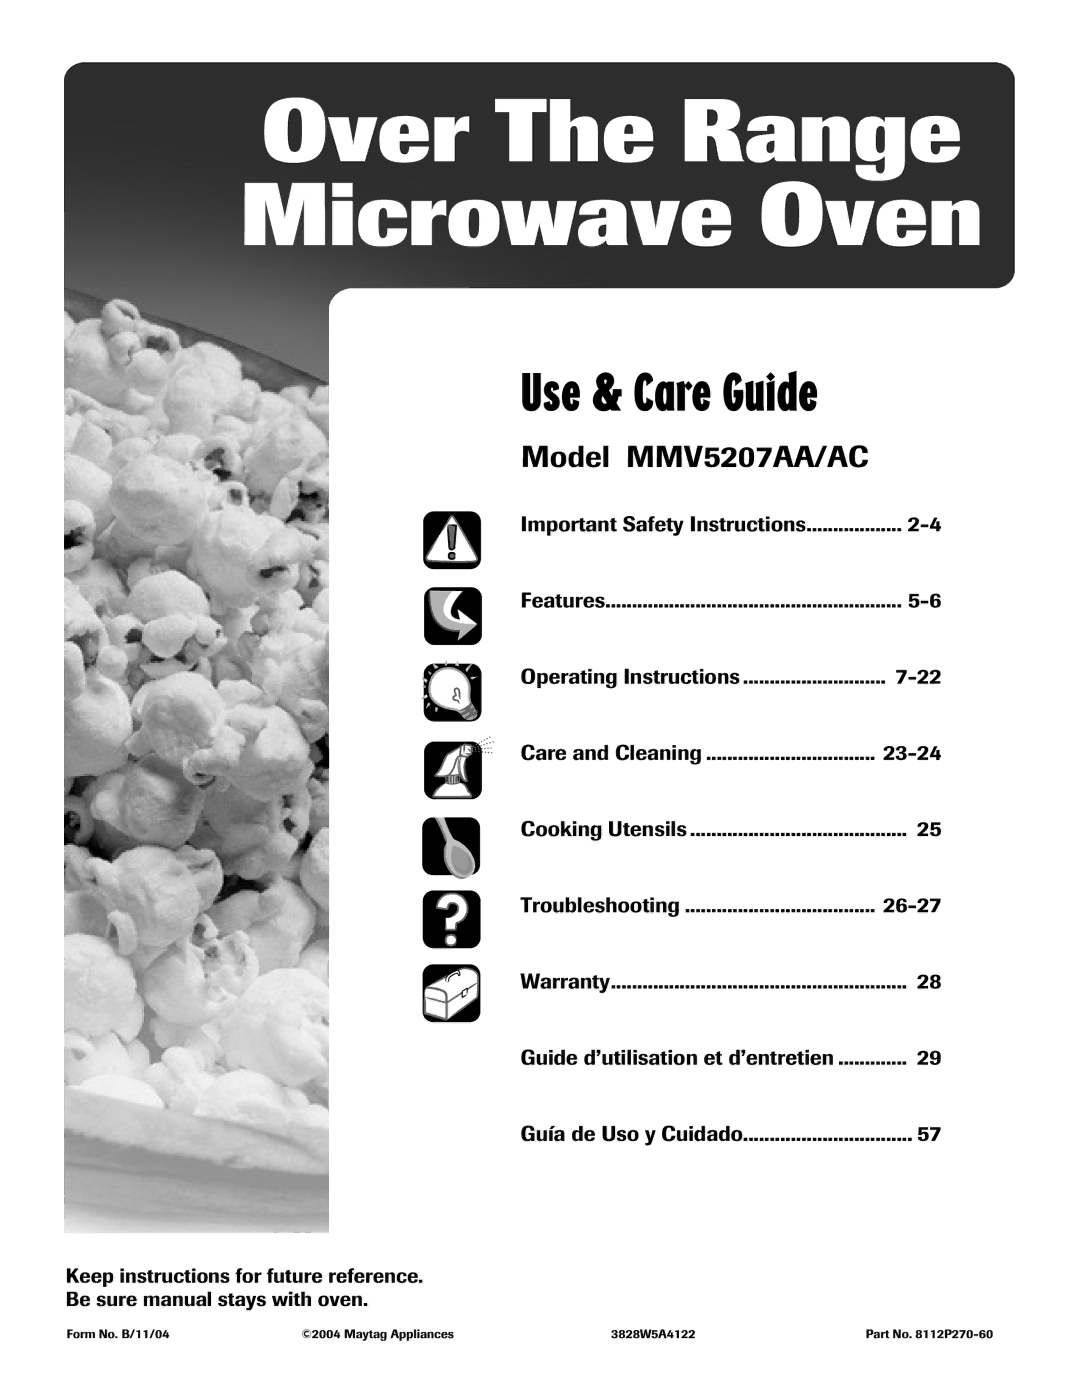 Whirlpool MMV5207AA/AC important safety instructions Guía de Uso y Cuidado, Features, Warranty 